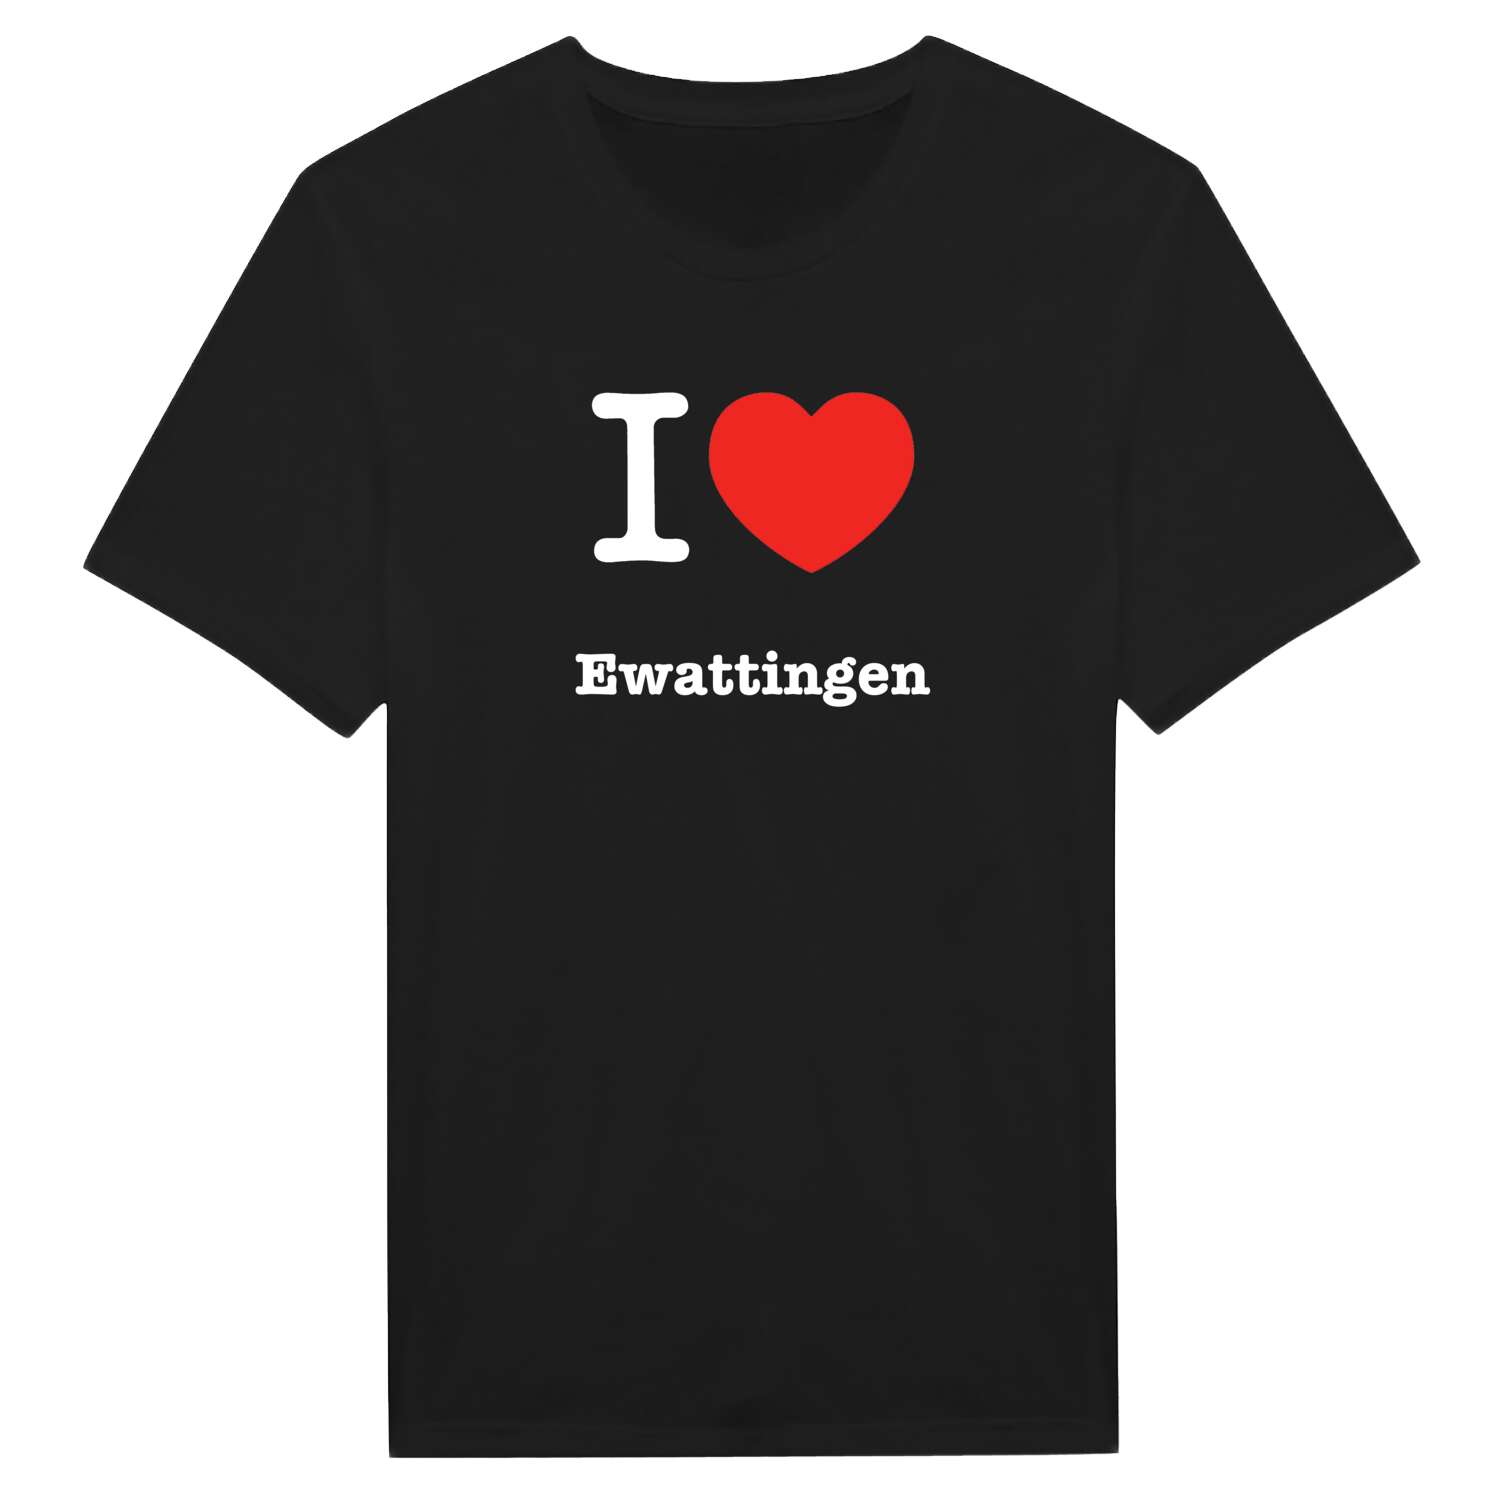 Ewattingen T-Shirt »I love«